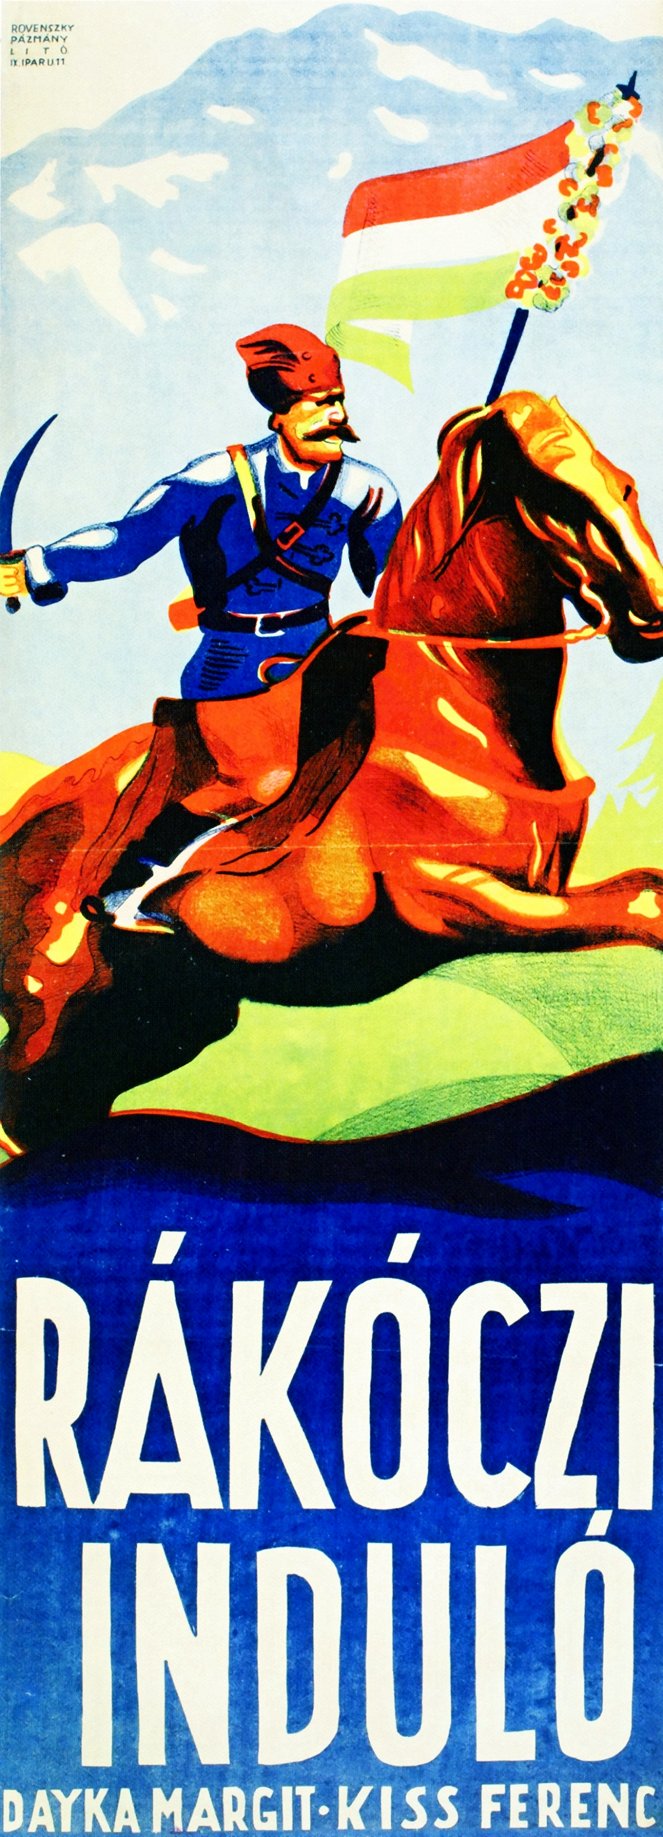 Rakoczi March - Posters